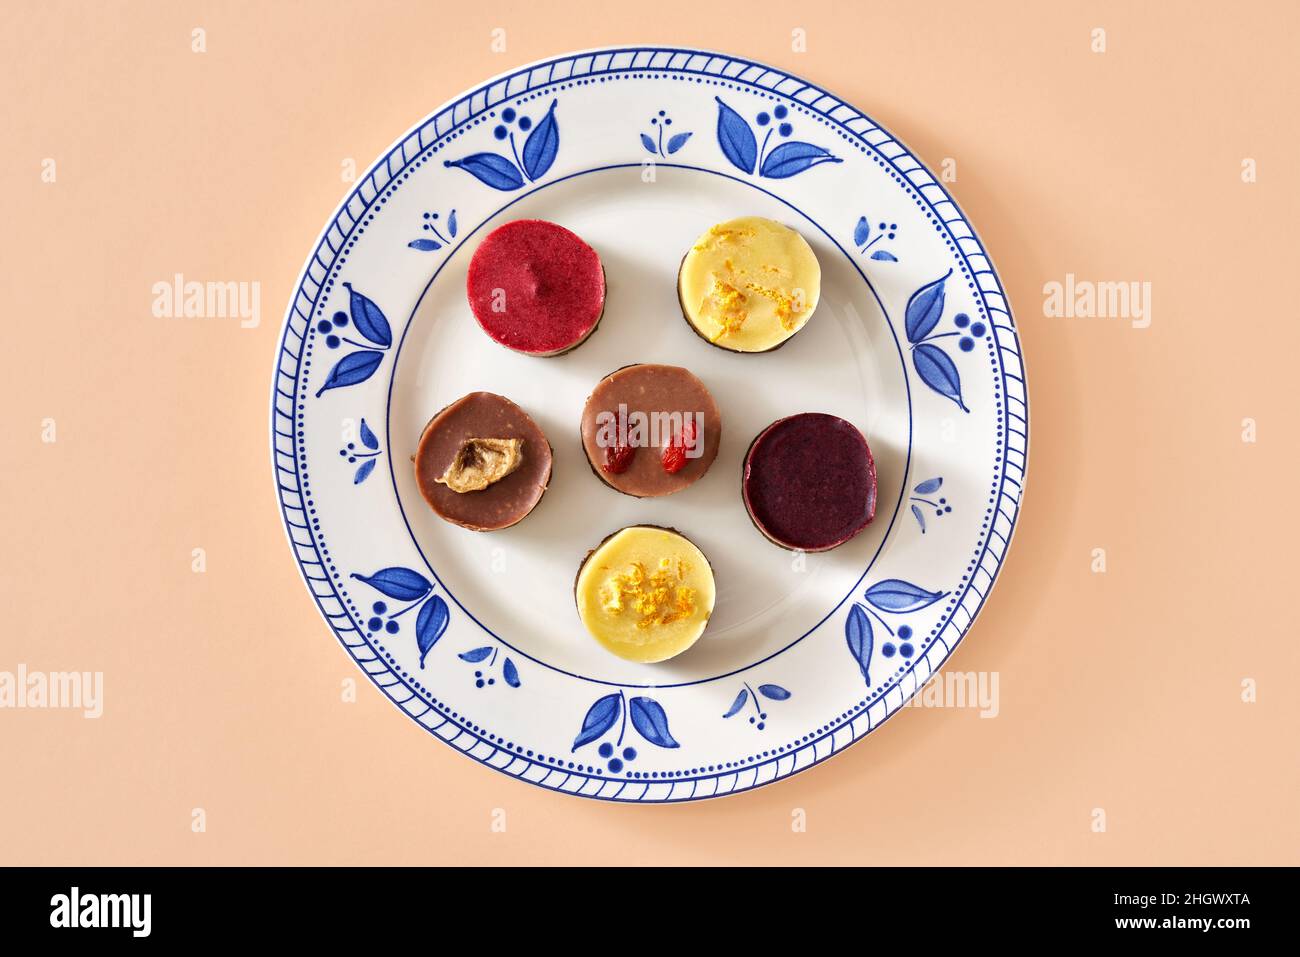 Heidelbeere, Himbeere, Goji, Zitrone und Banane rohe vegane Mini-Desserts auf einem Teller, Draufsicht Stockfoto